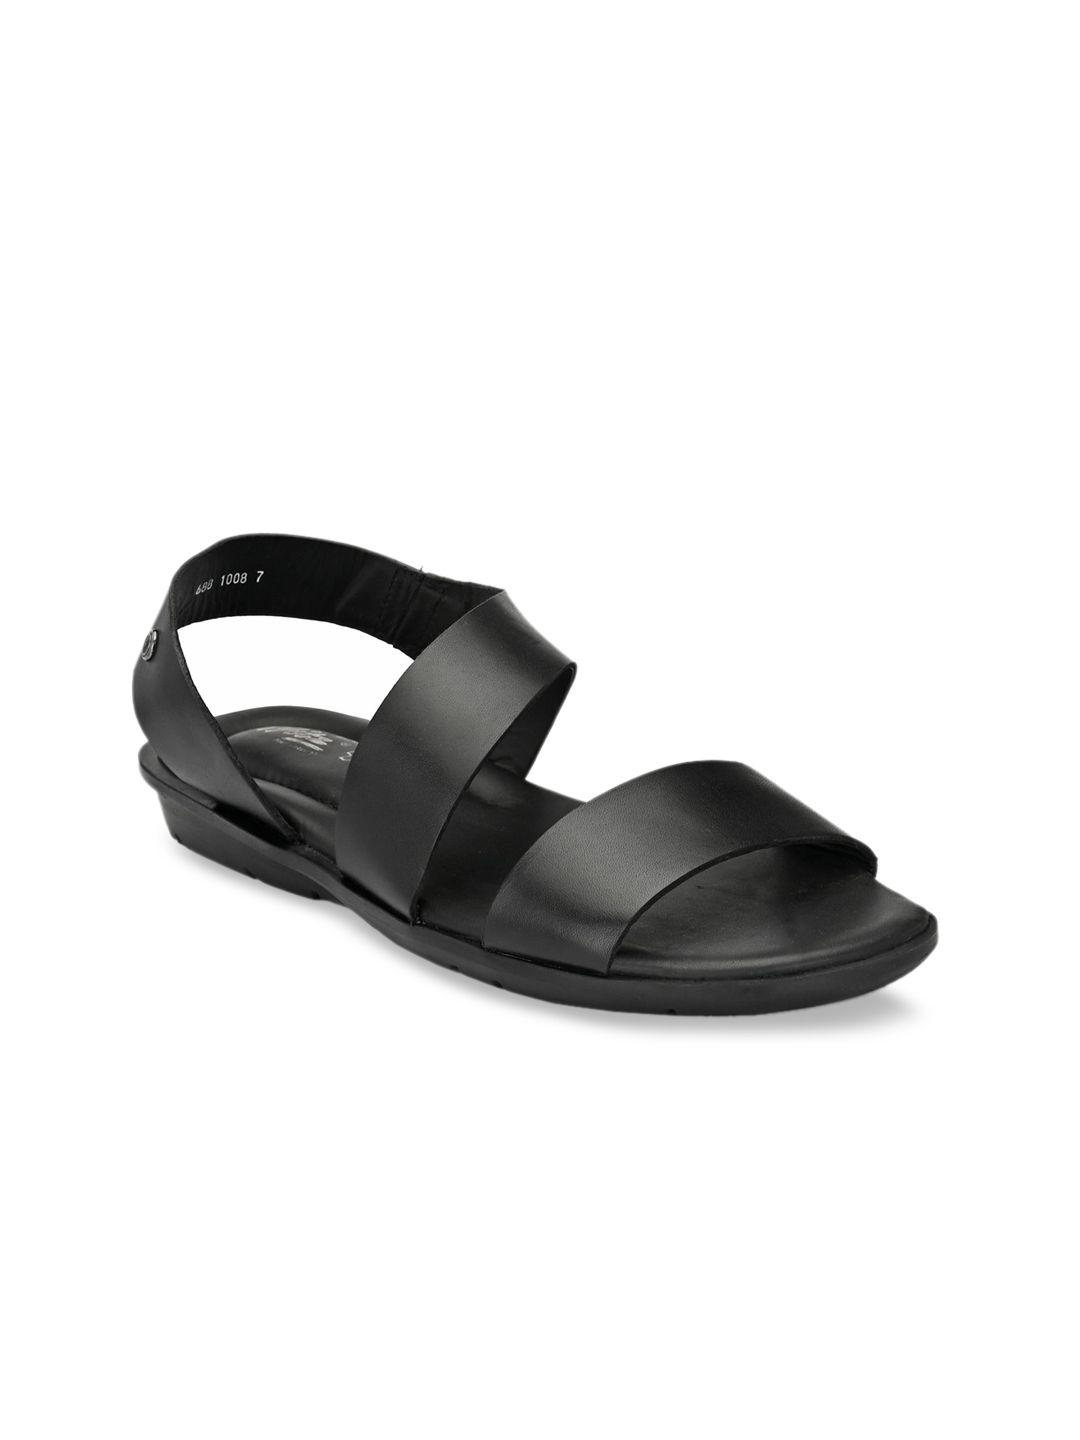 hitz-men-black-solid-leather-comfort-sandals